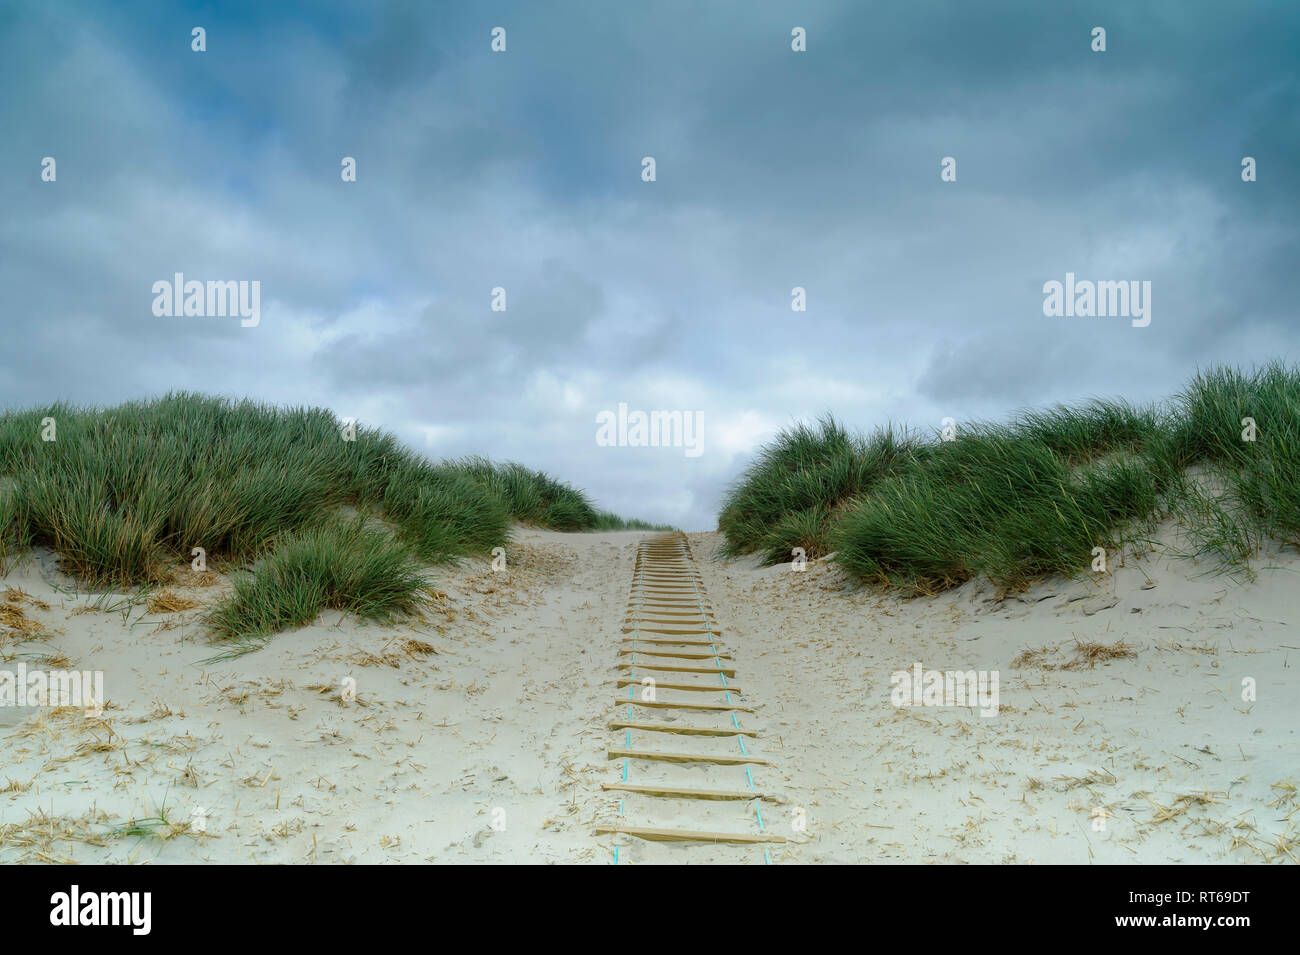 Denmark, Jutland, Henne Strand, dune landscape Stock Photo